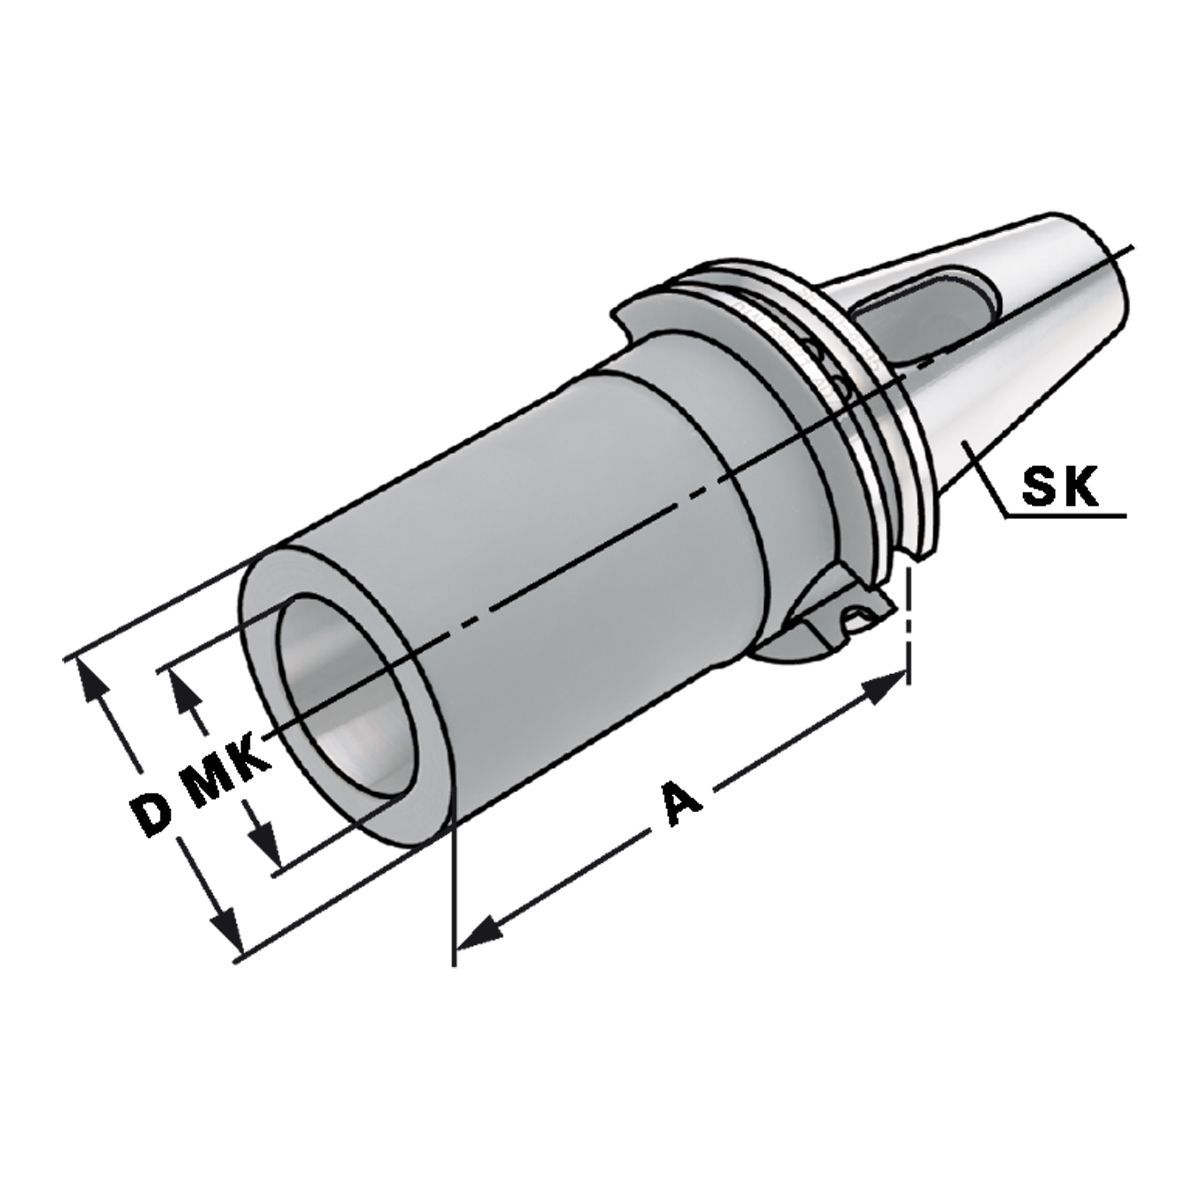 Zwischenhülse SK 30-3-80 für MK mit Austreiblappen DIN 6383